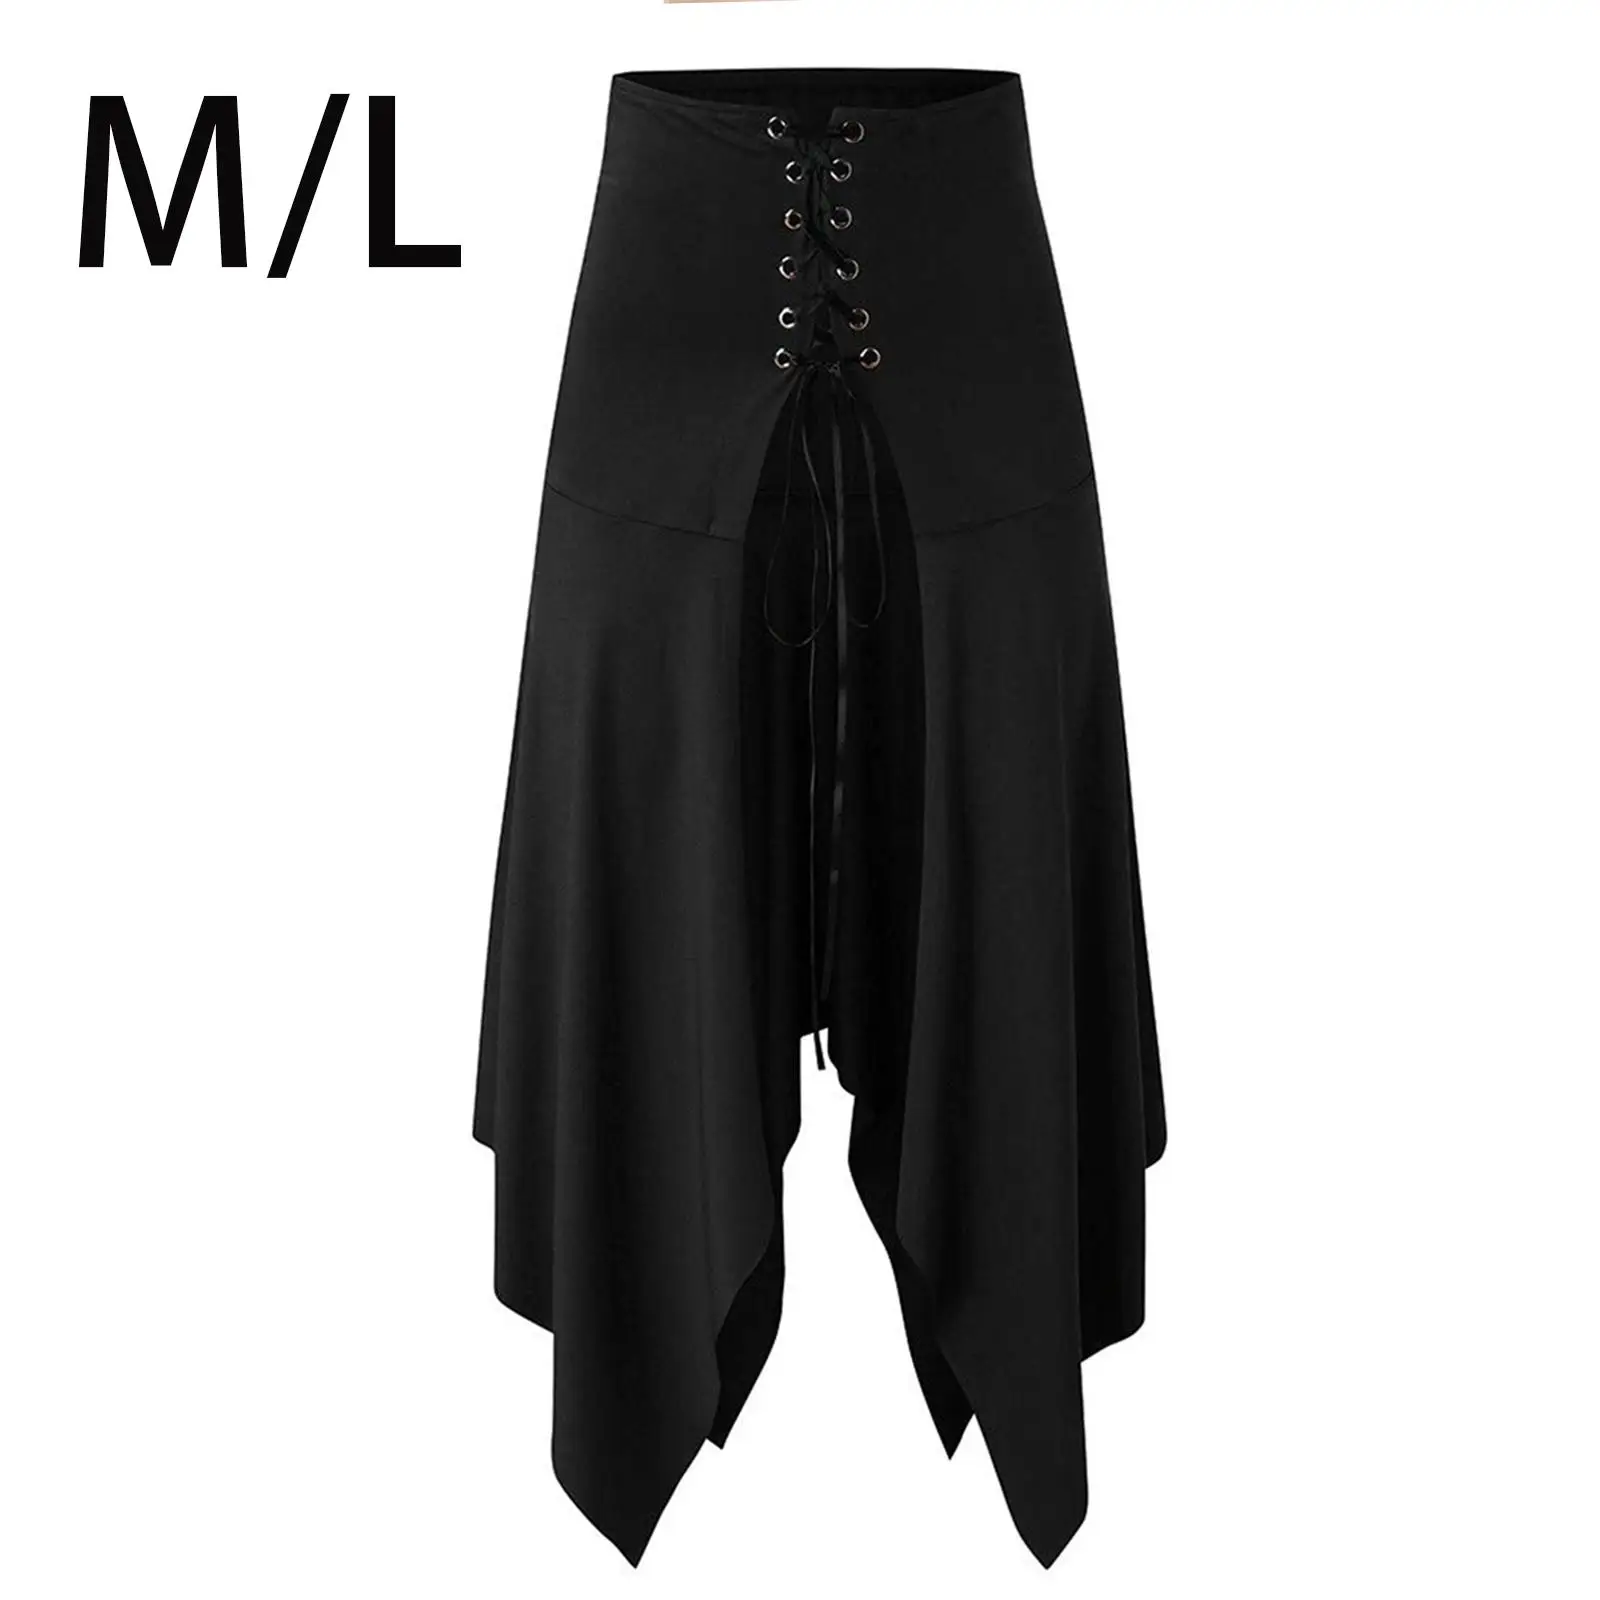 Womens Midi Skirt Tulle Skirts Adjustable Gothic Skirt Halloween Costume for Prom Festival Masquerade Carnival Fancy Dress